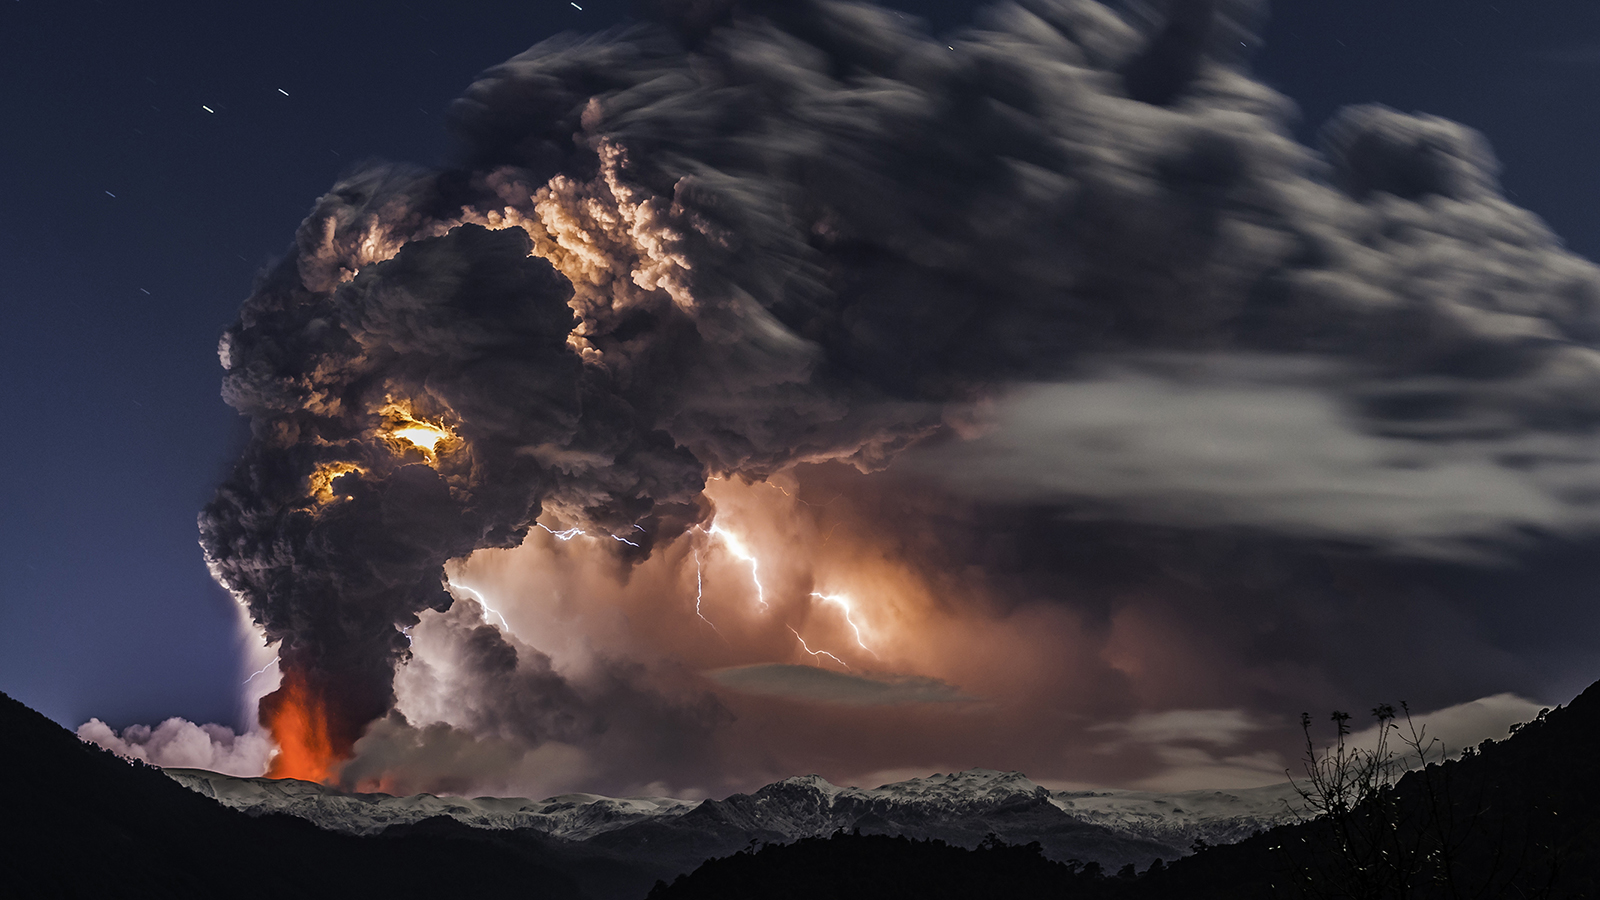 チリの火山の噴火と火山雷の美しくも脅威的な写真 N ミライノシテン